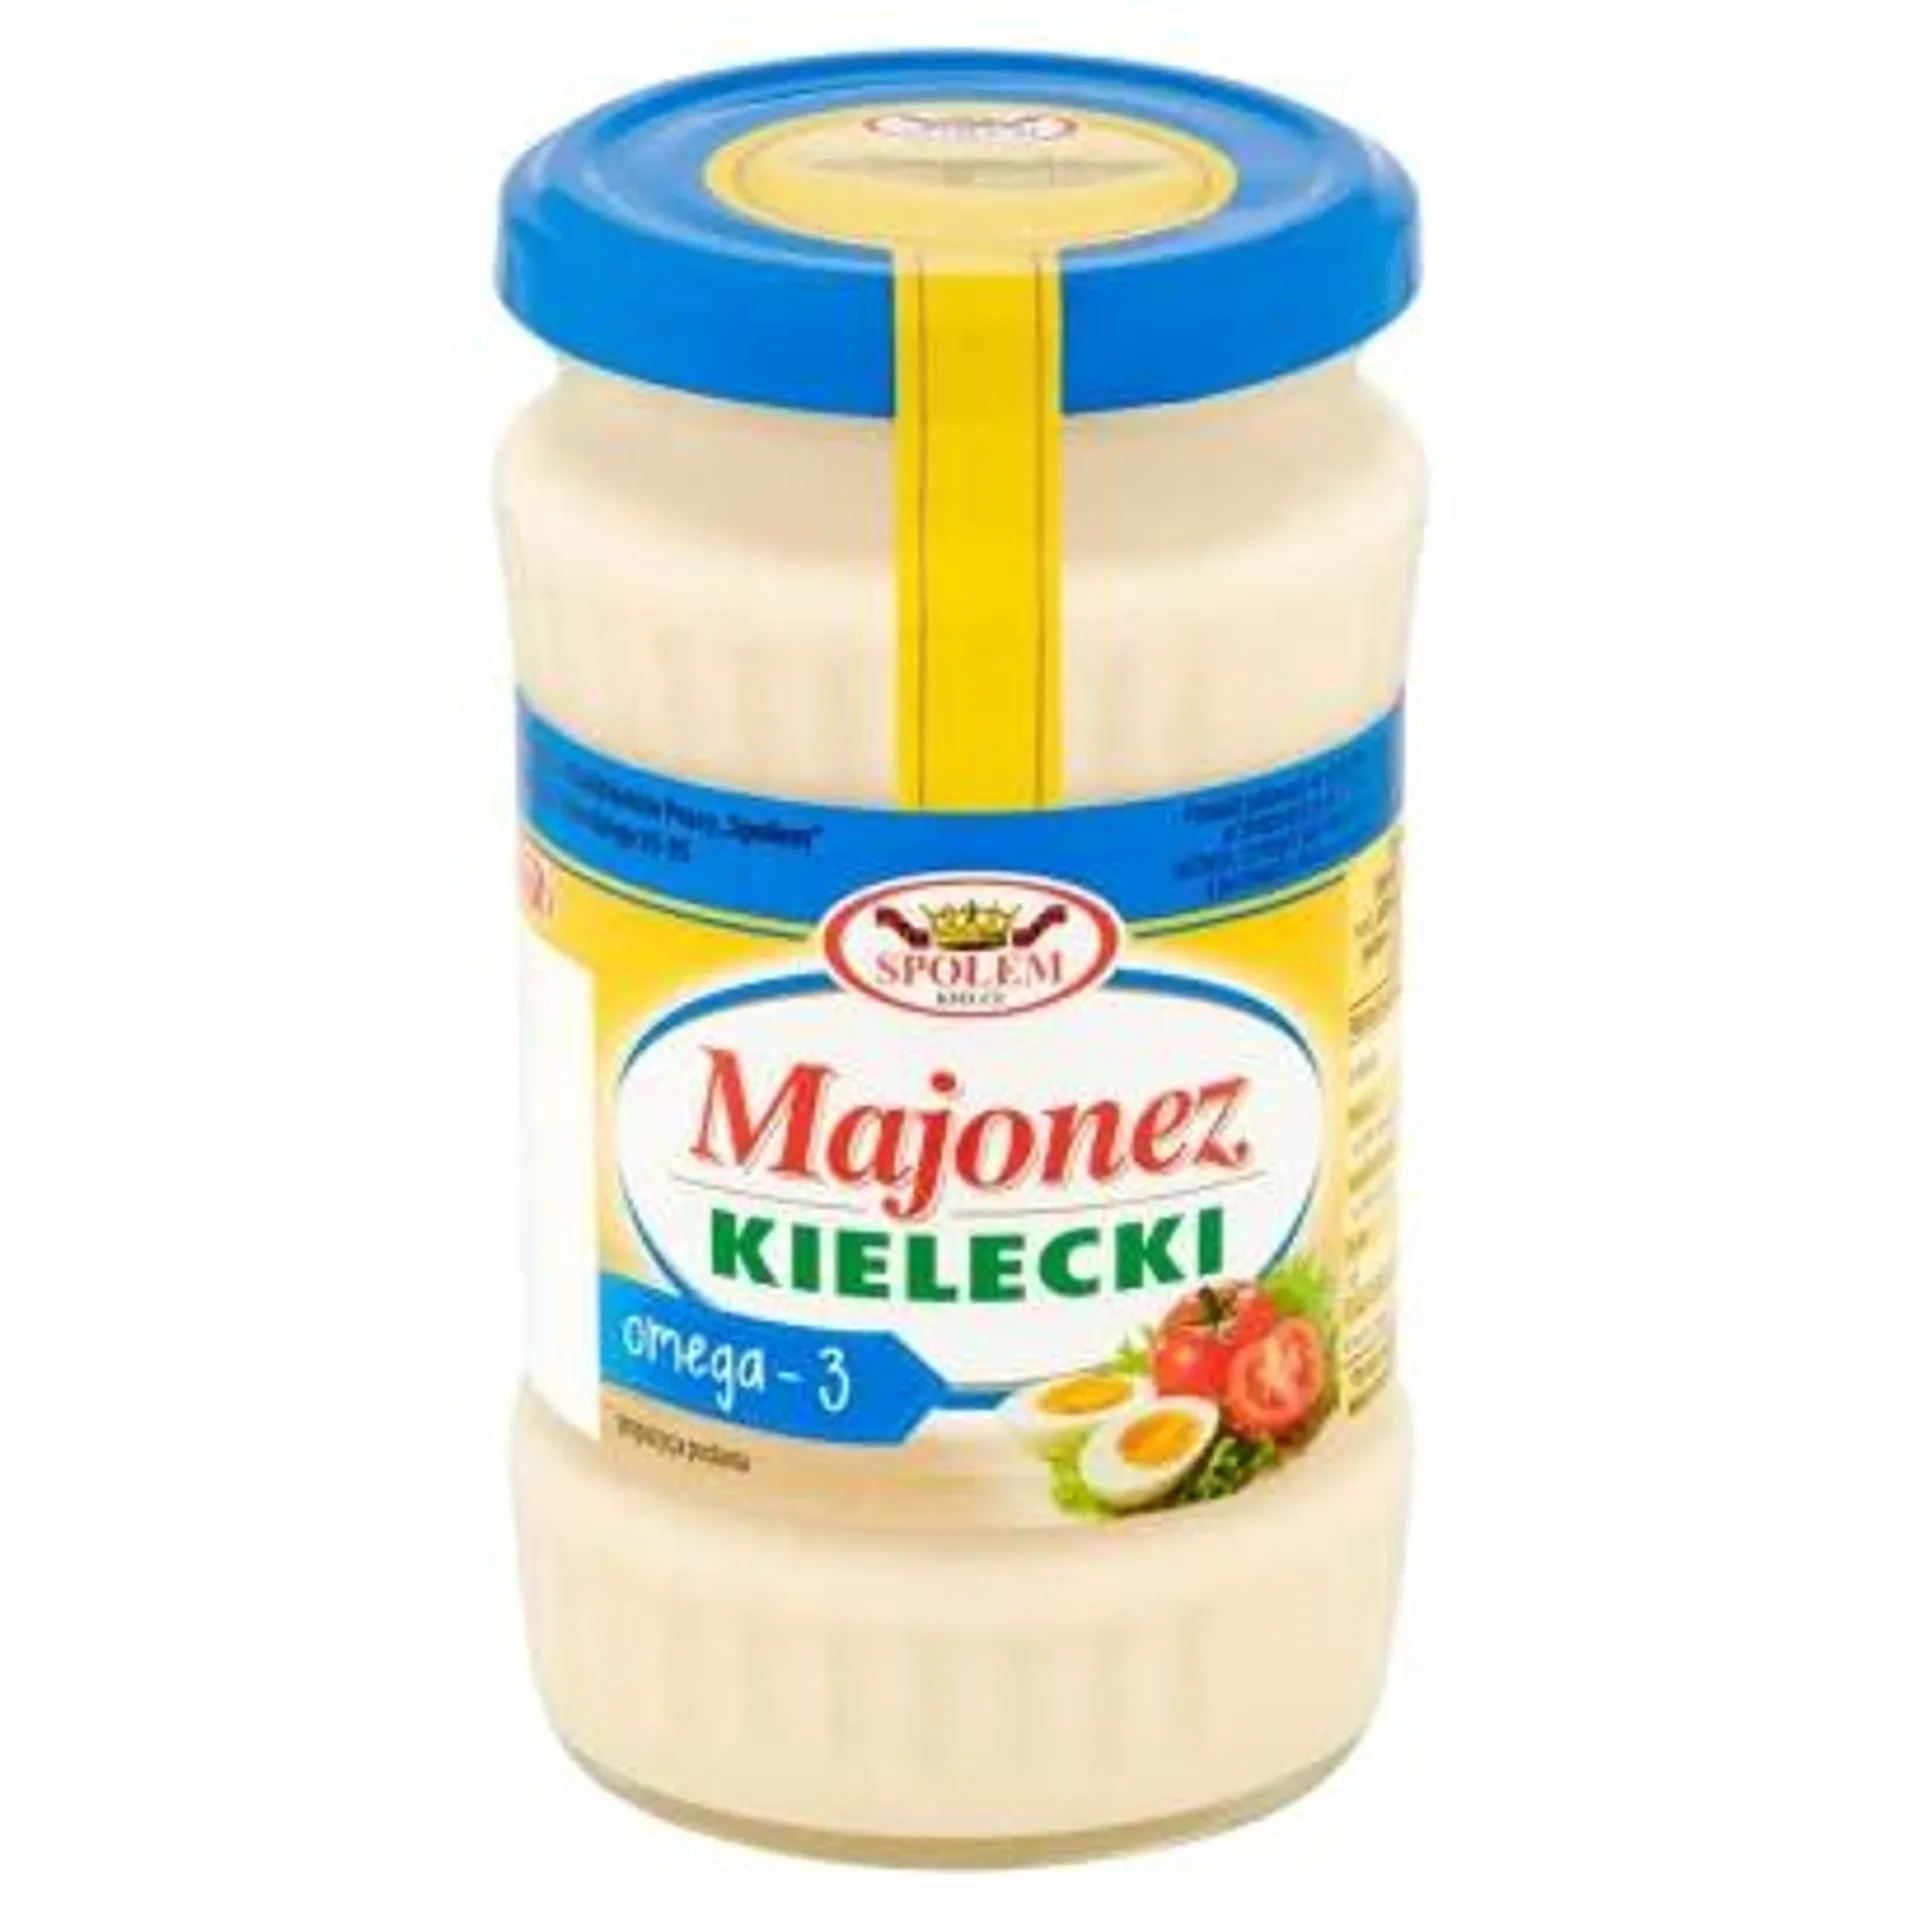 Majonez Kielecki - Majonez Kielecki omega-3